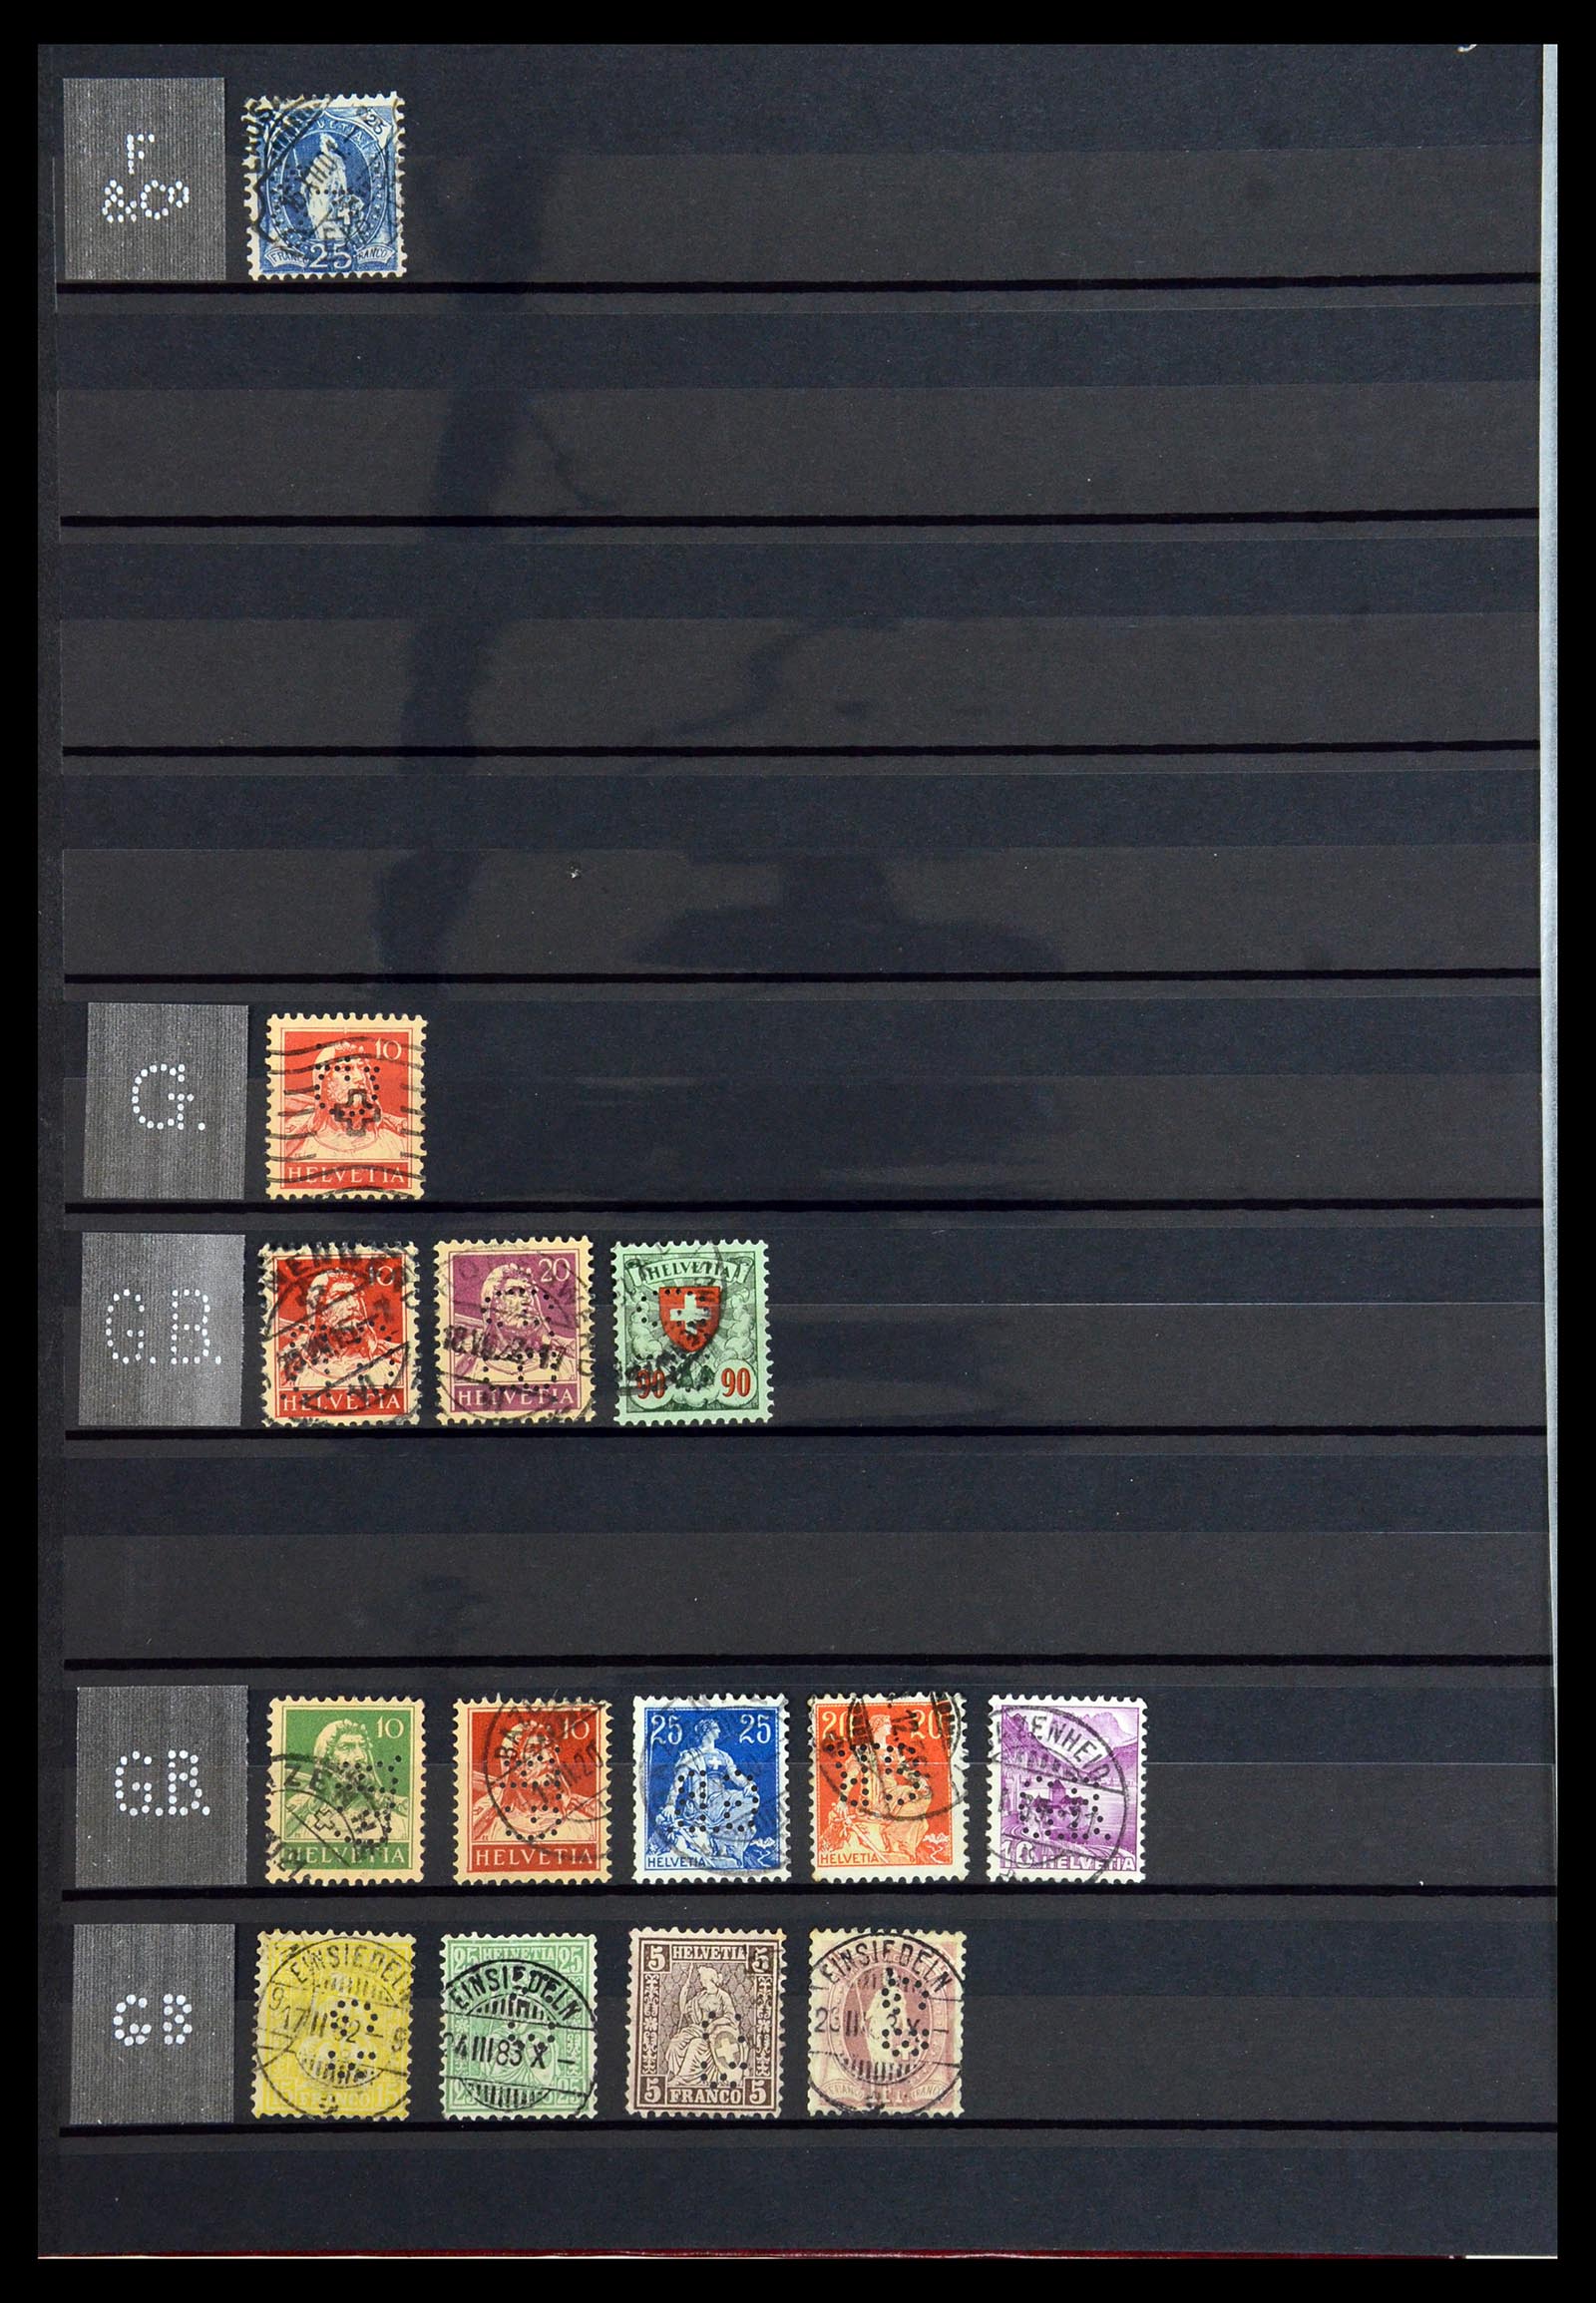 36372 020 - Stamp collection 36372 Switzerland perfins 1880-1960.